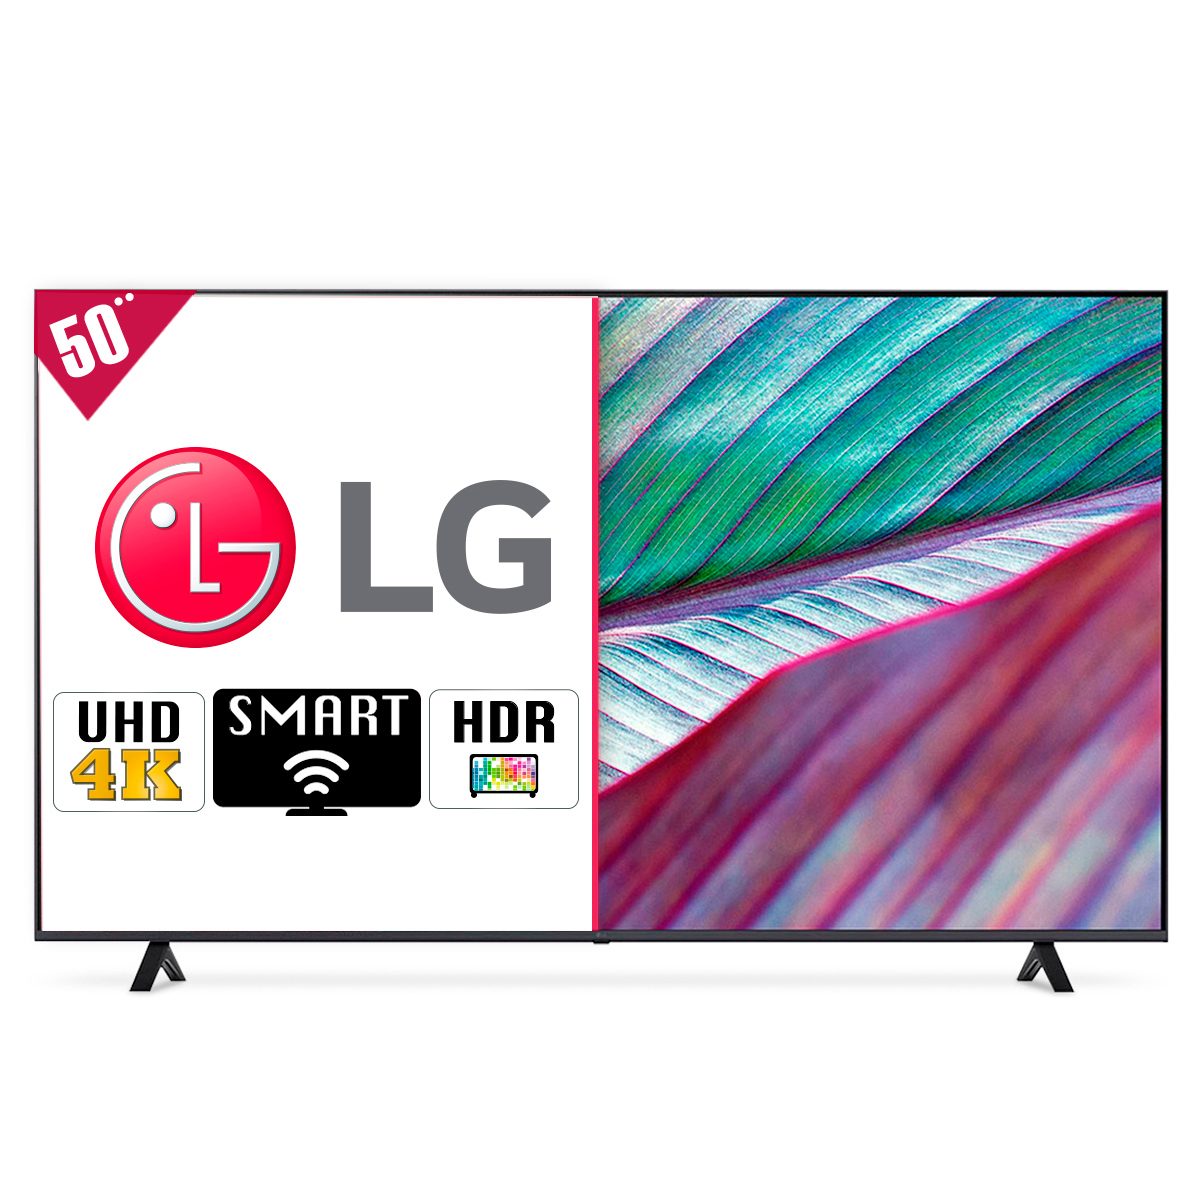 Sabes cómo puedes navegar en Smart TV LG?